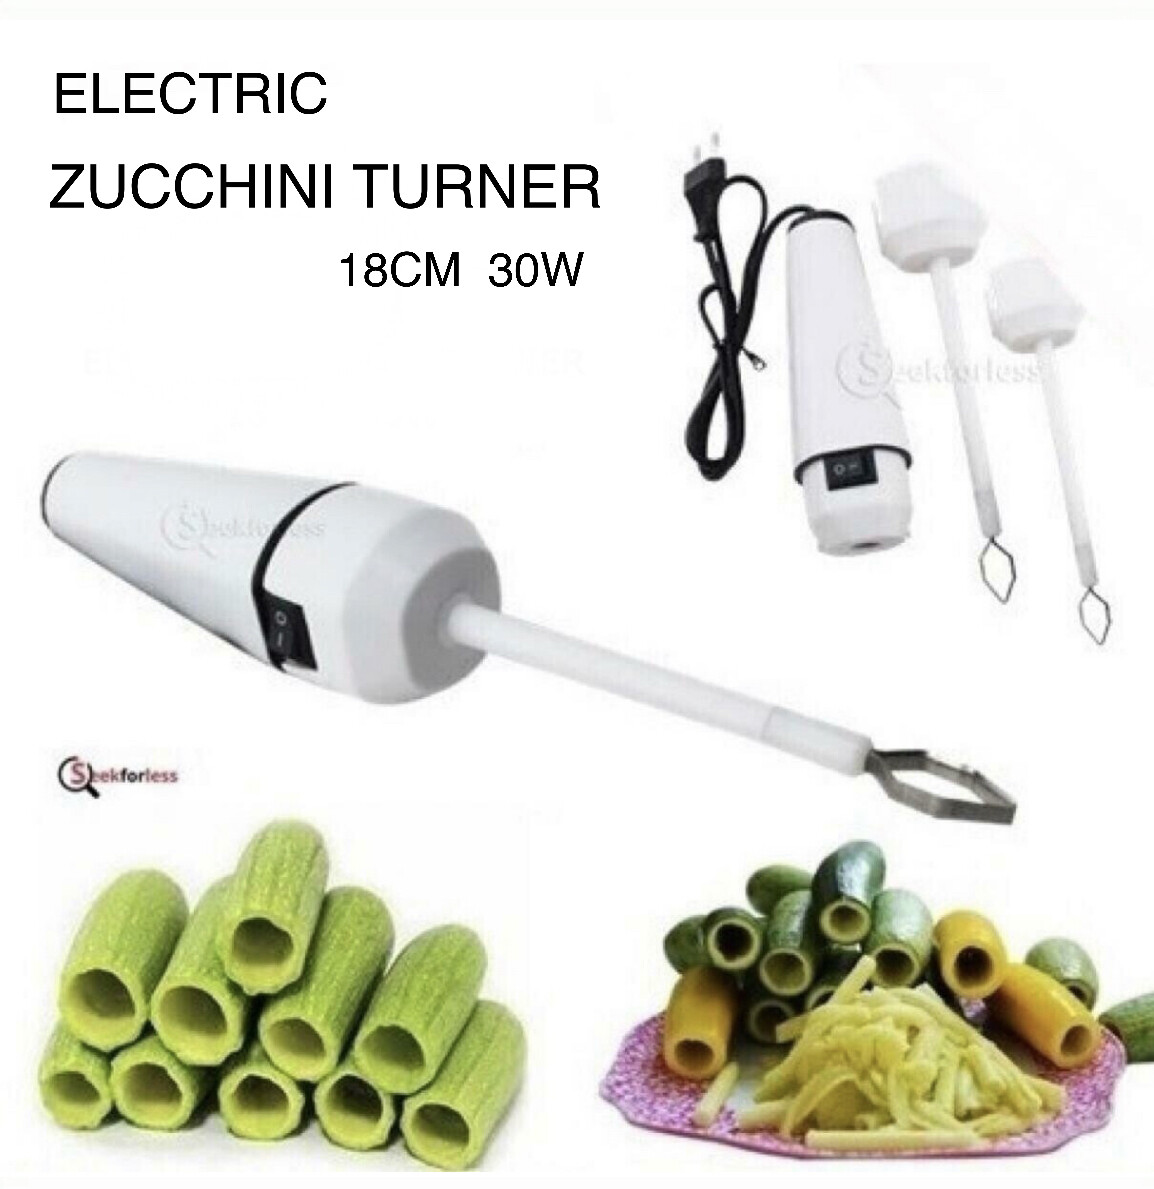 Electric Zucchini Turner